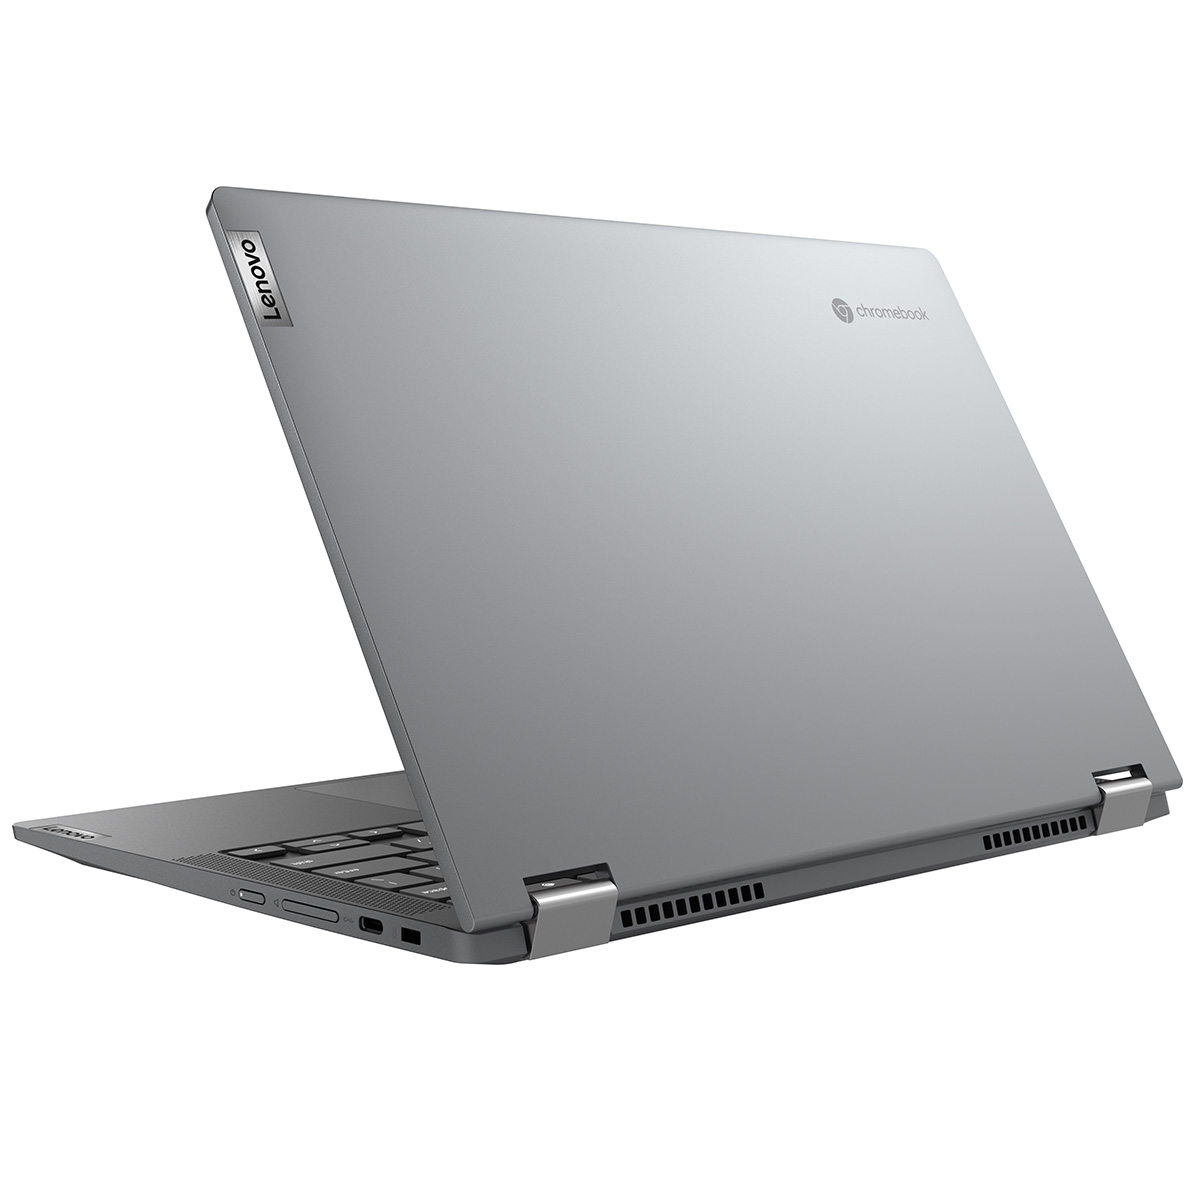 ［在庫限り］限定特典付き Chromebook 新品 ノートパソコン IdeaPad Flex550i 13.3型 メモリ4GB タッチパネル対応